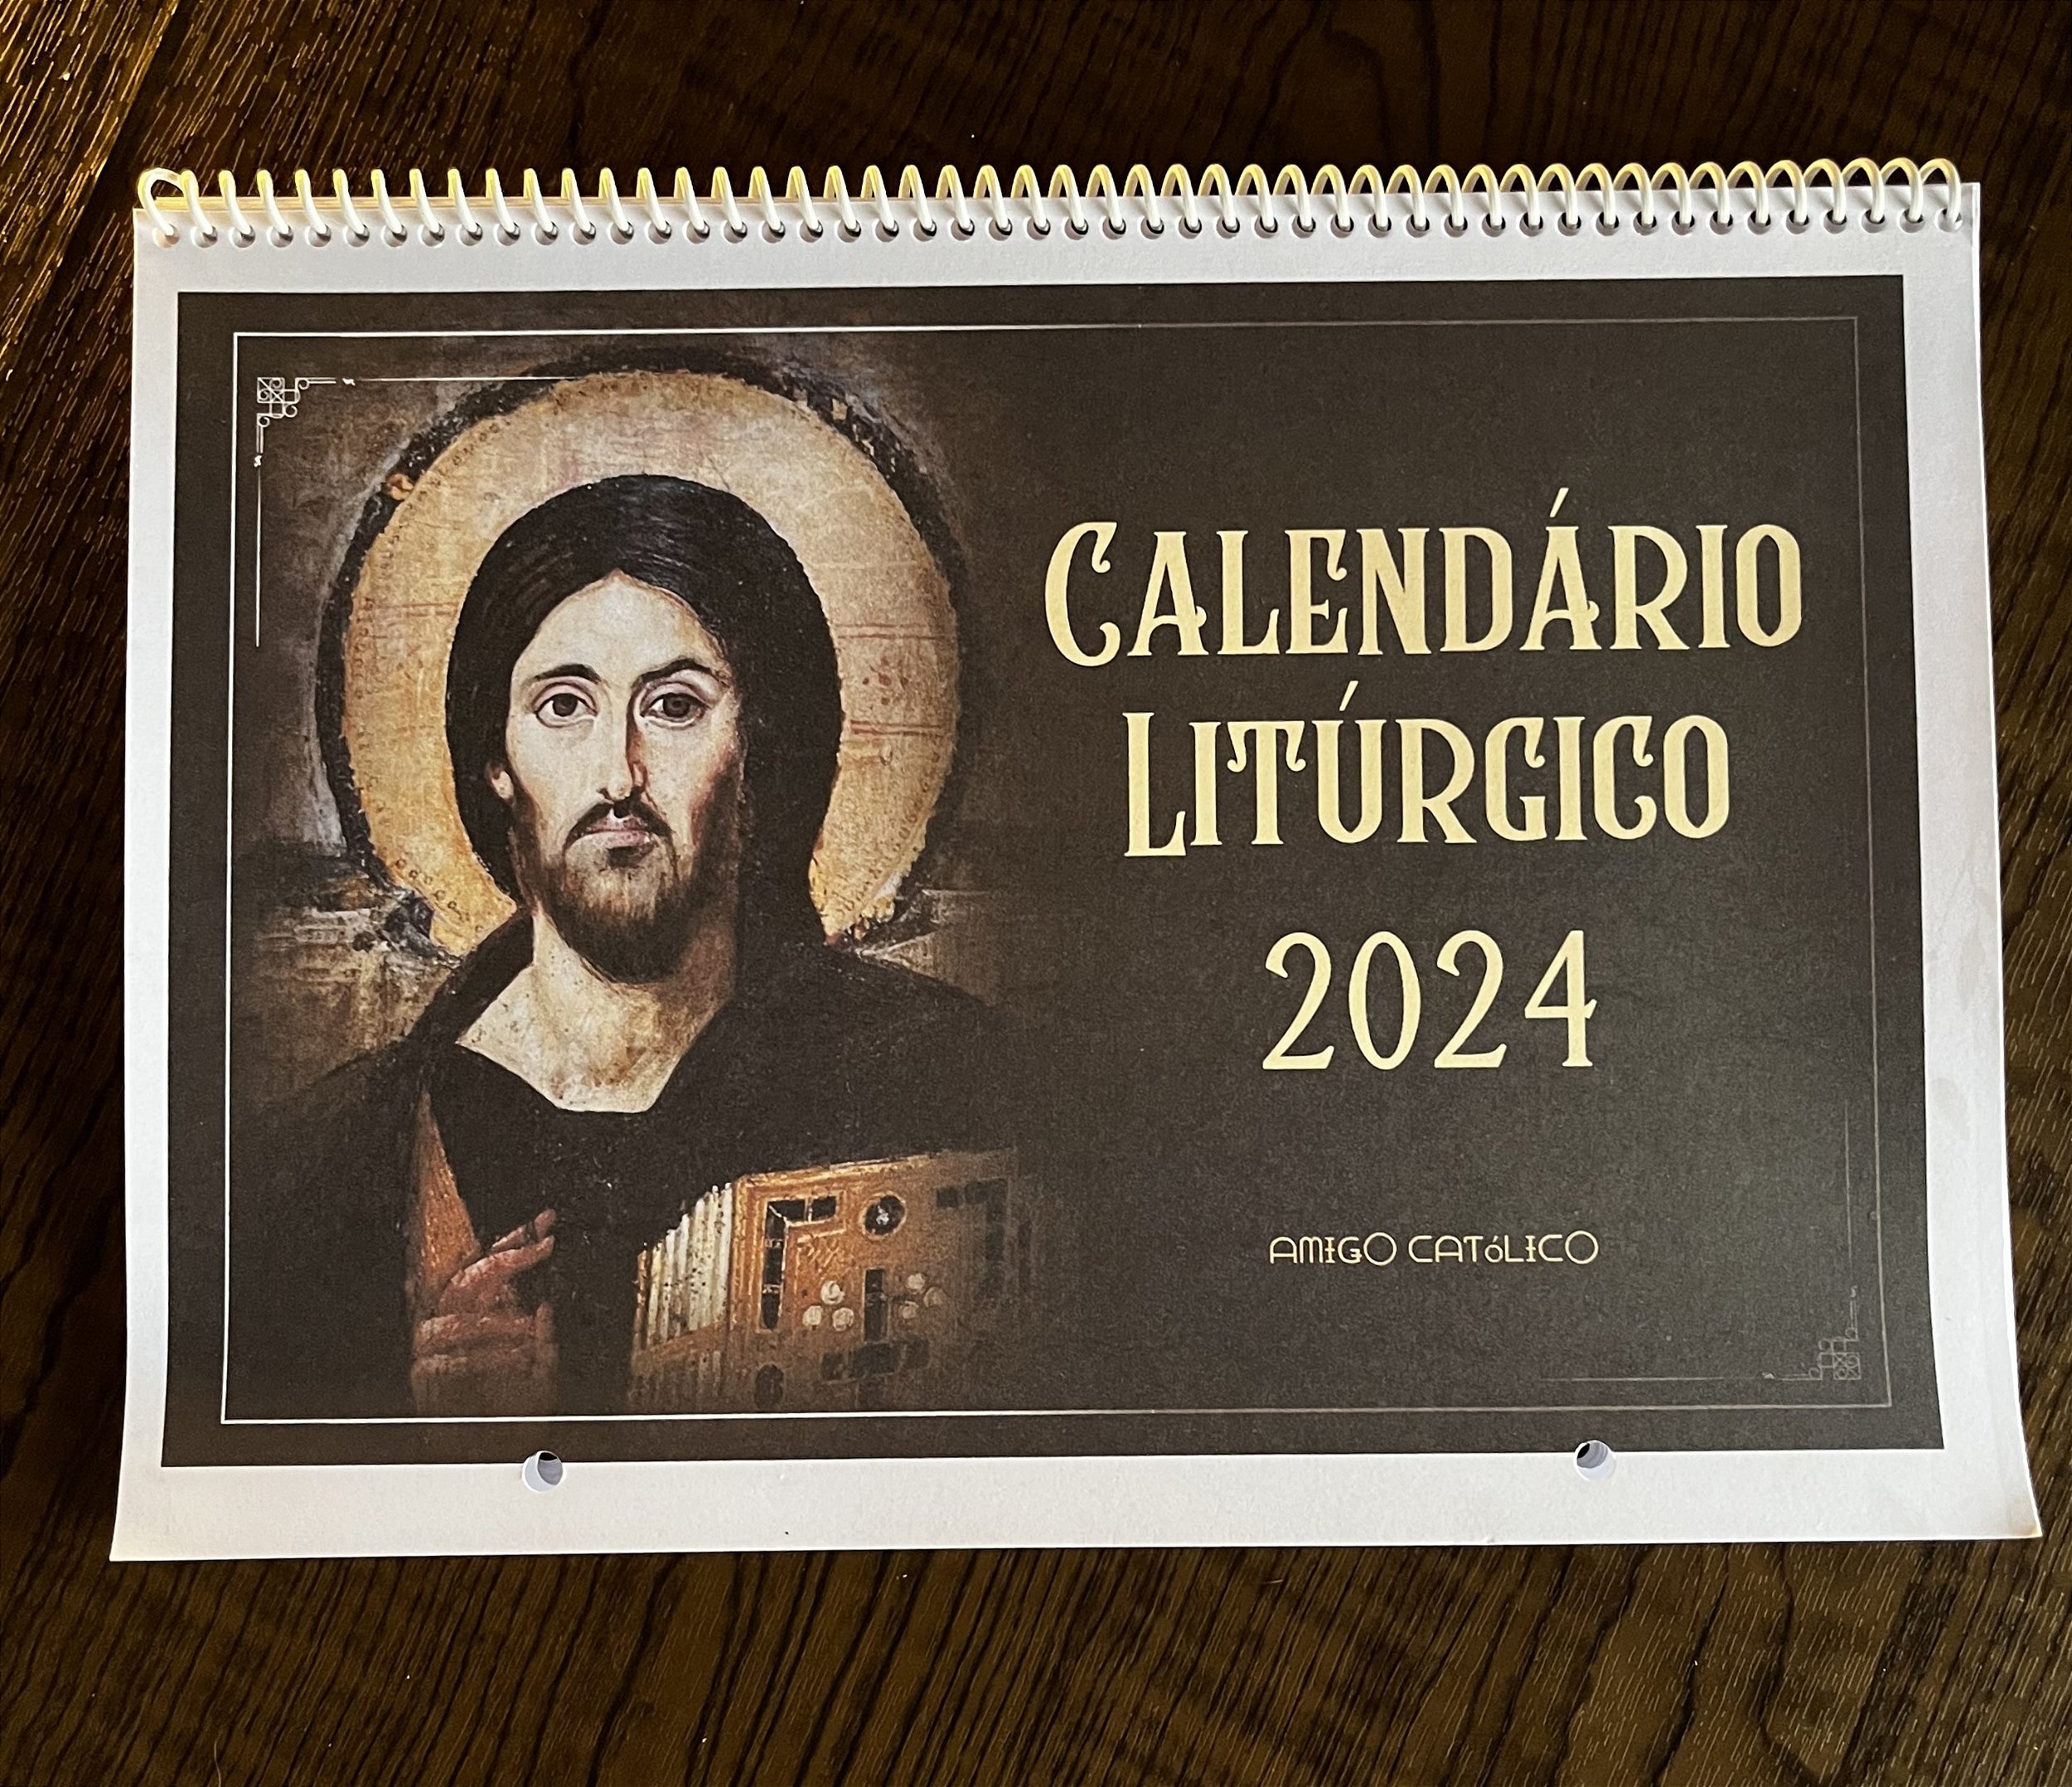 Calendário Litúrgico 2024 - Amigo Católico